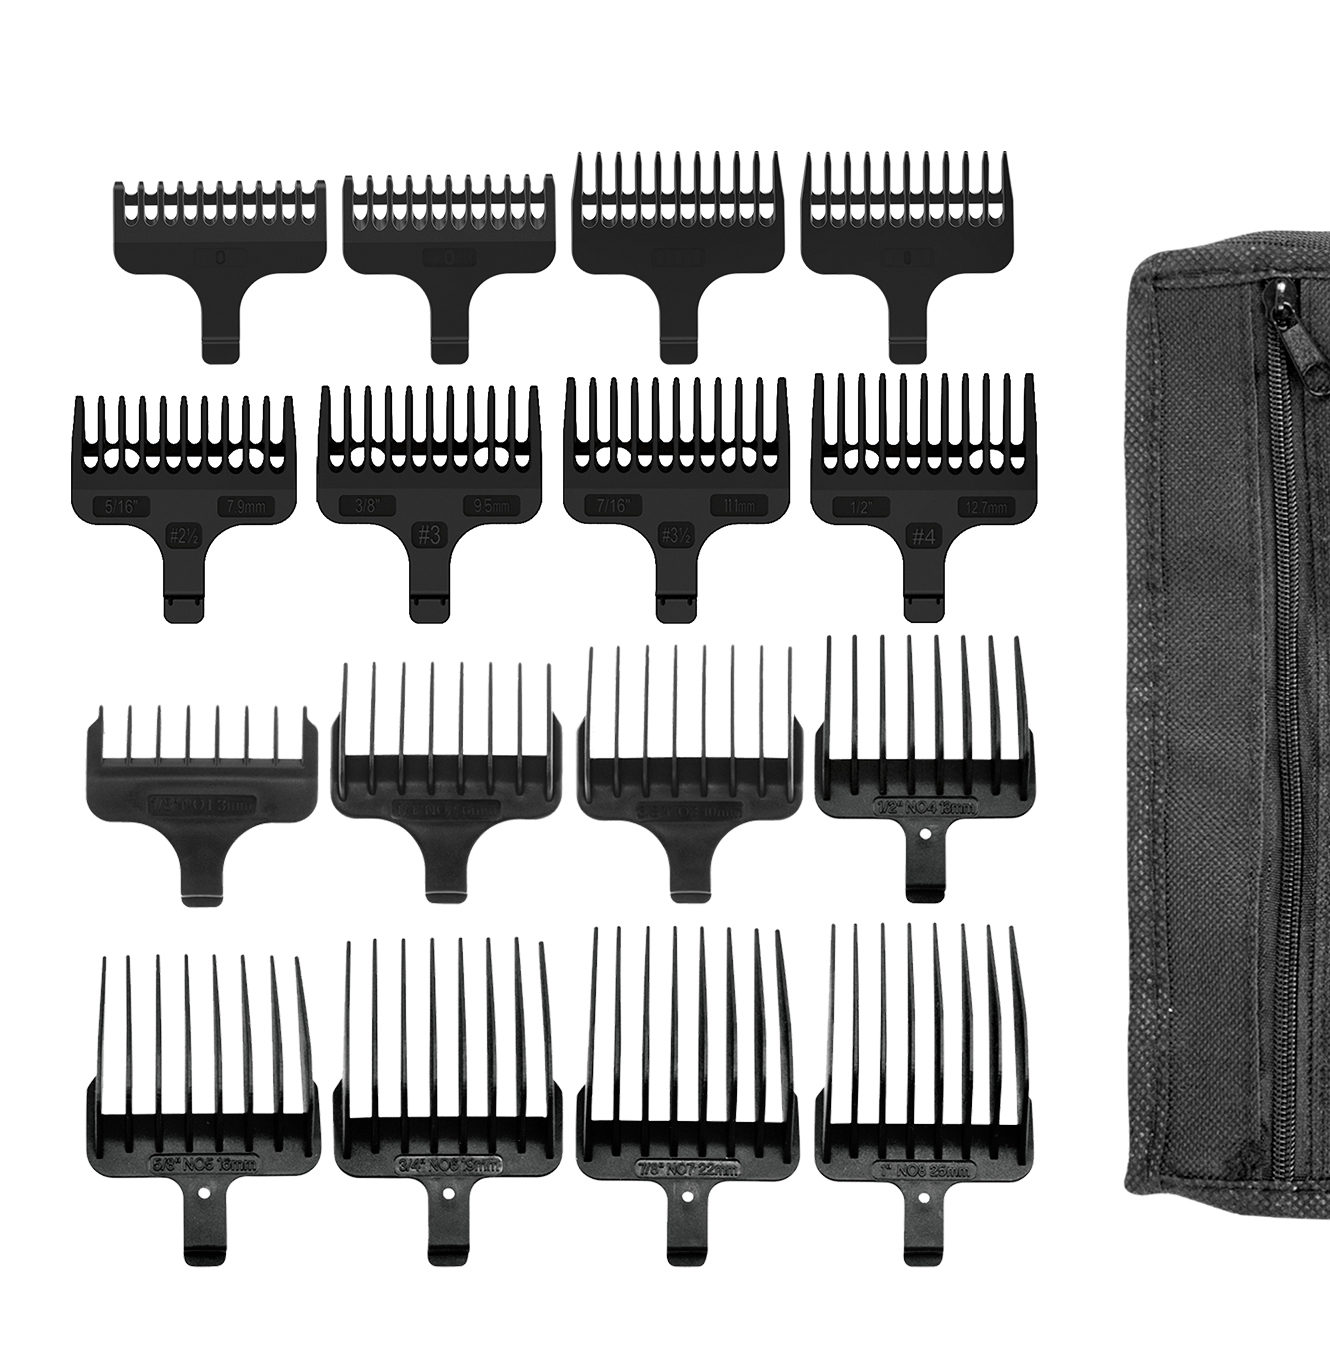 Multi groom comb set